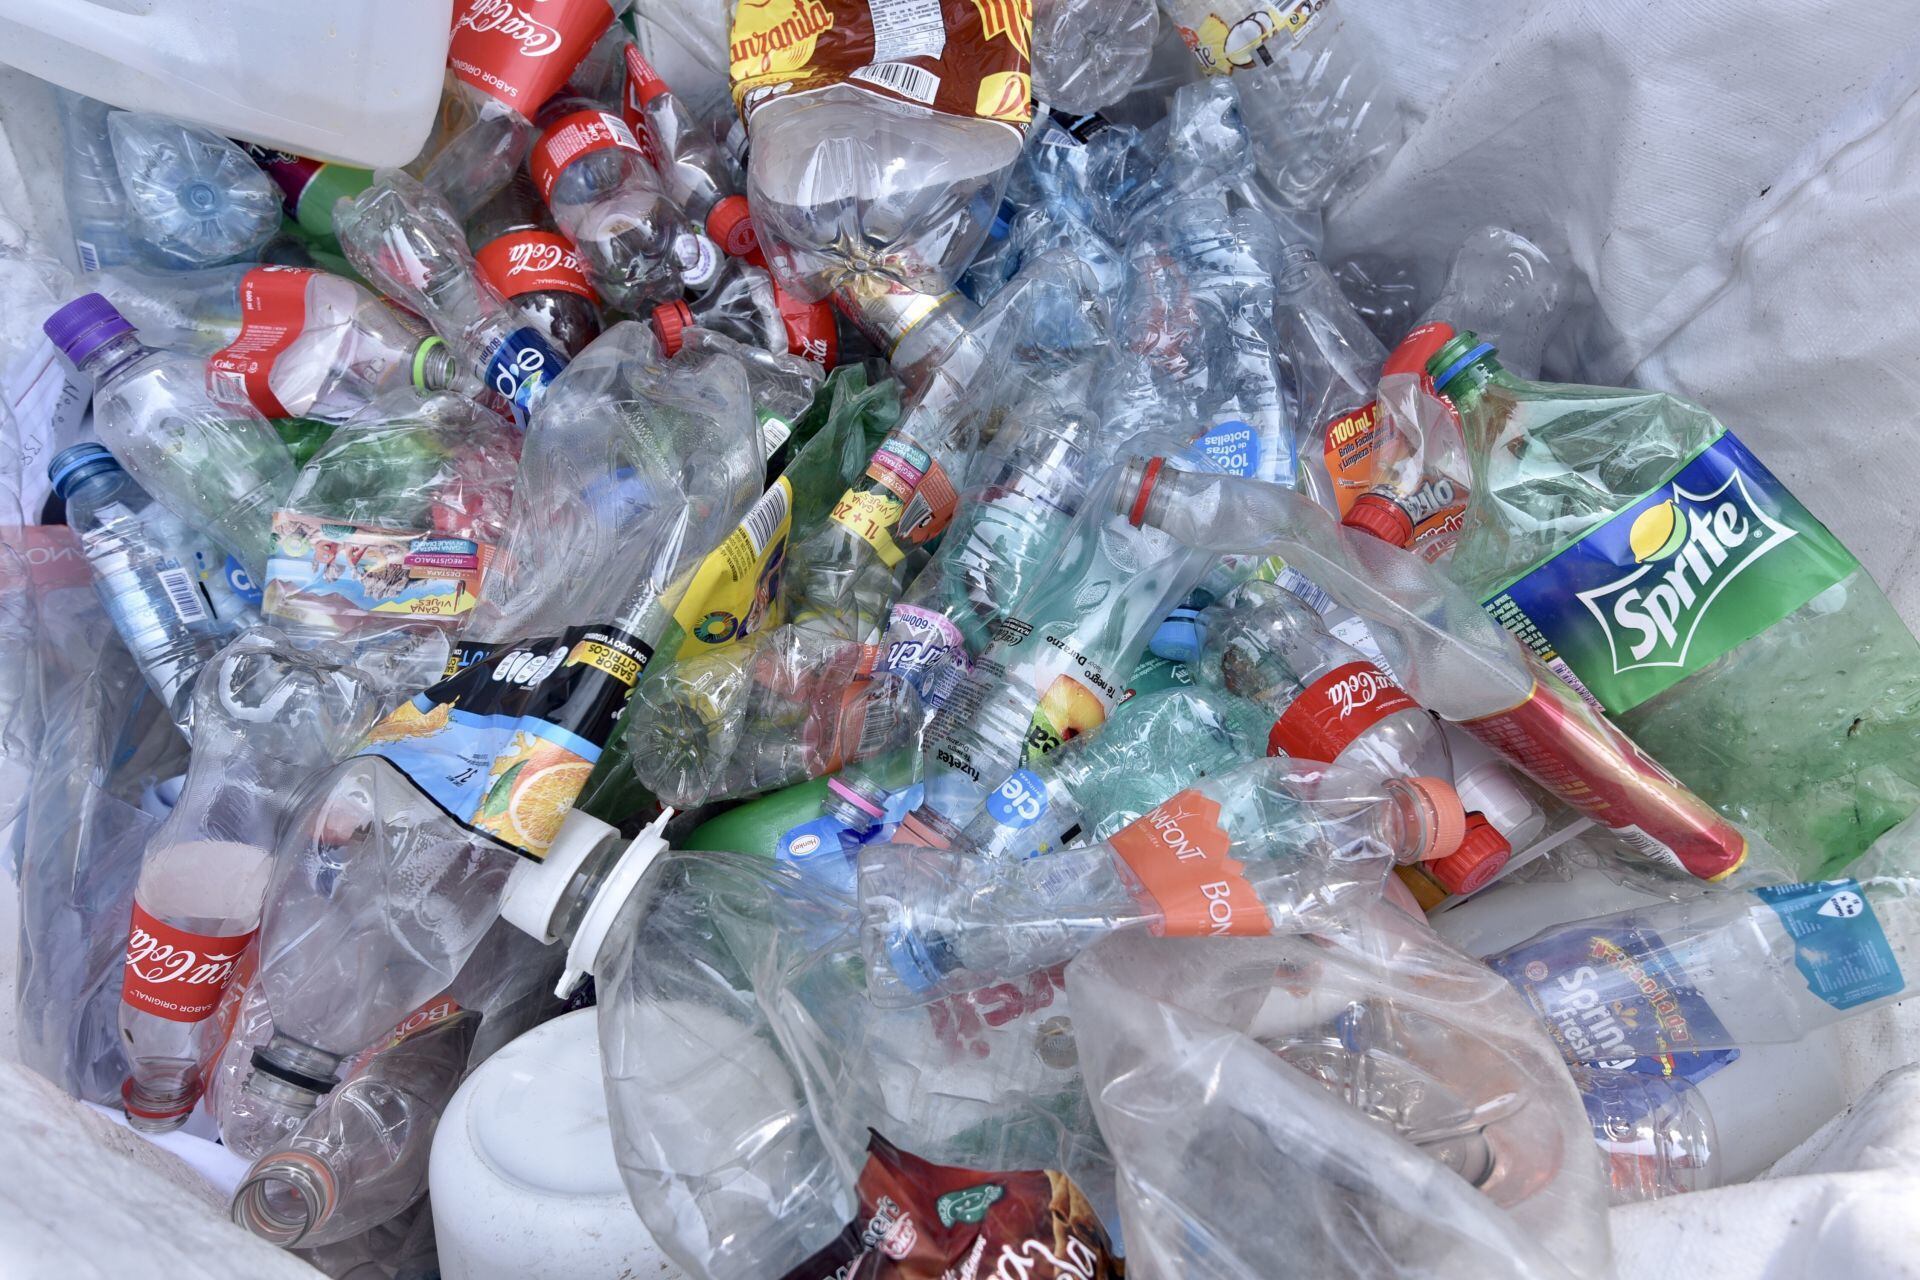 La UNAM dará kits y despensas a quienes den plásticos limpios y separados.